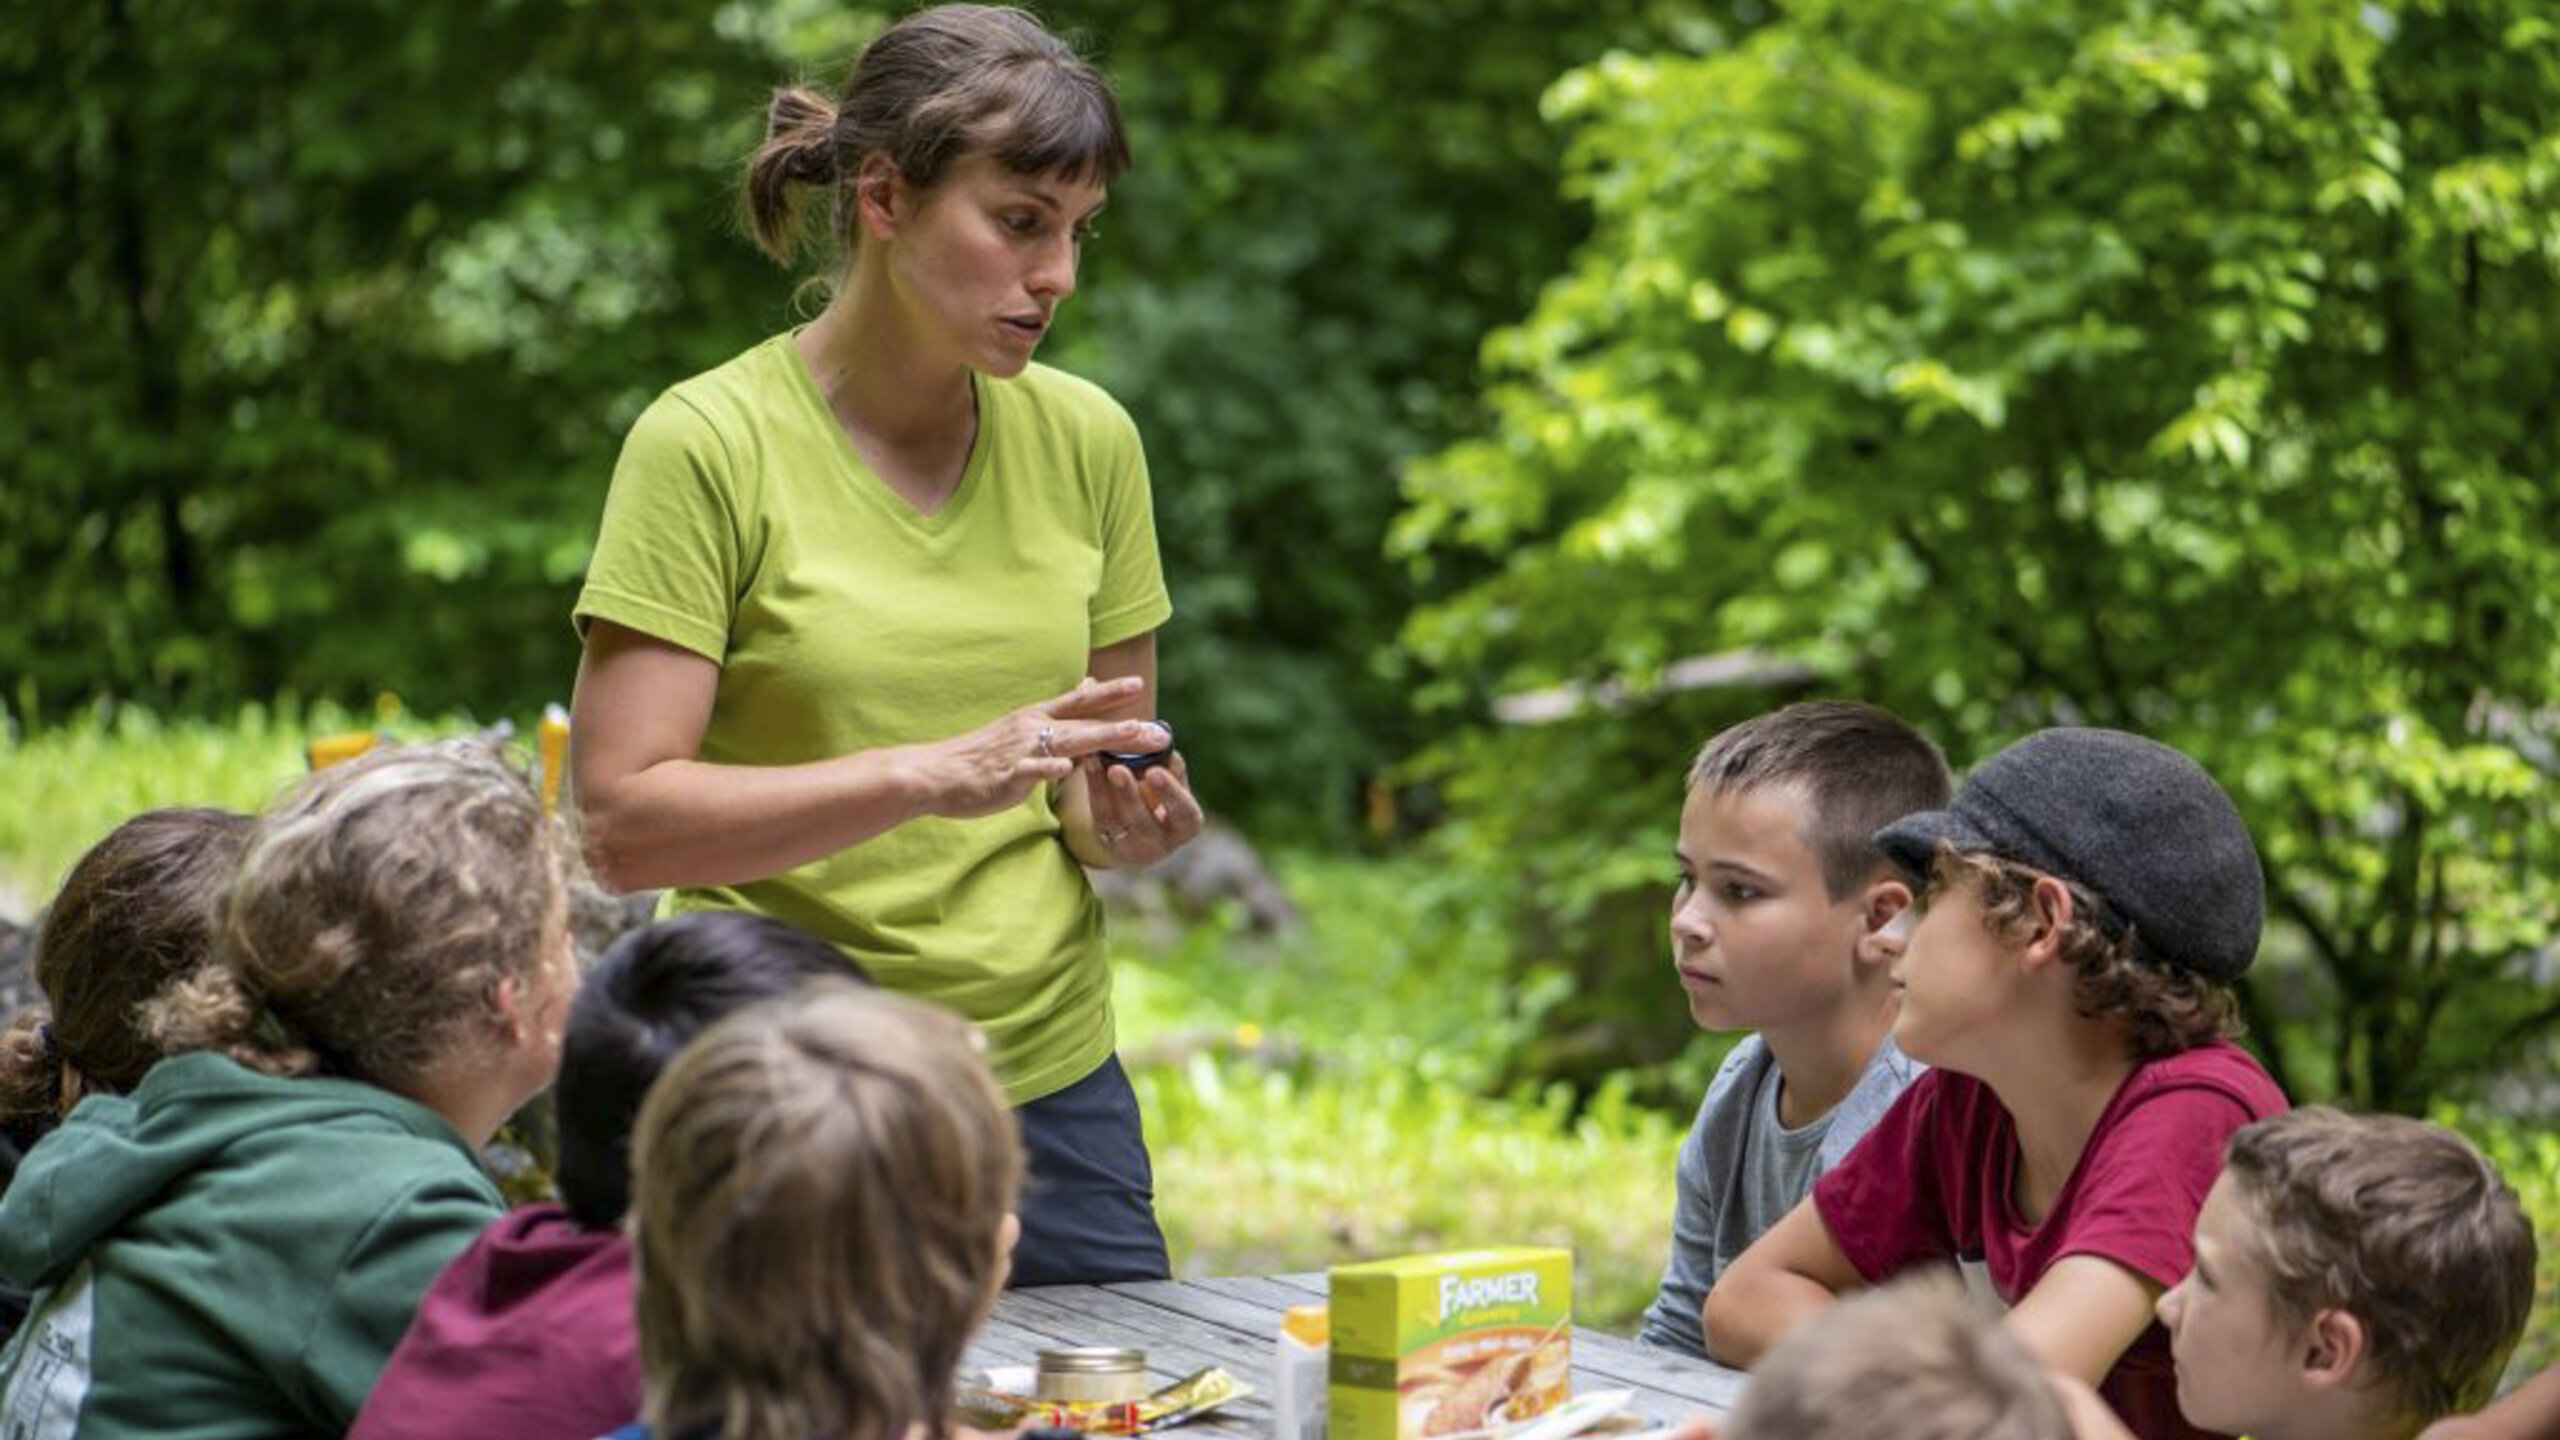 Eine Tierpark Rangerin hält einen kleinen Honigtopf in der Hand. Die am Tisch sitzenden Kinder schauen ihr zu.